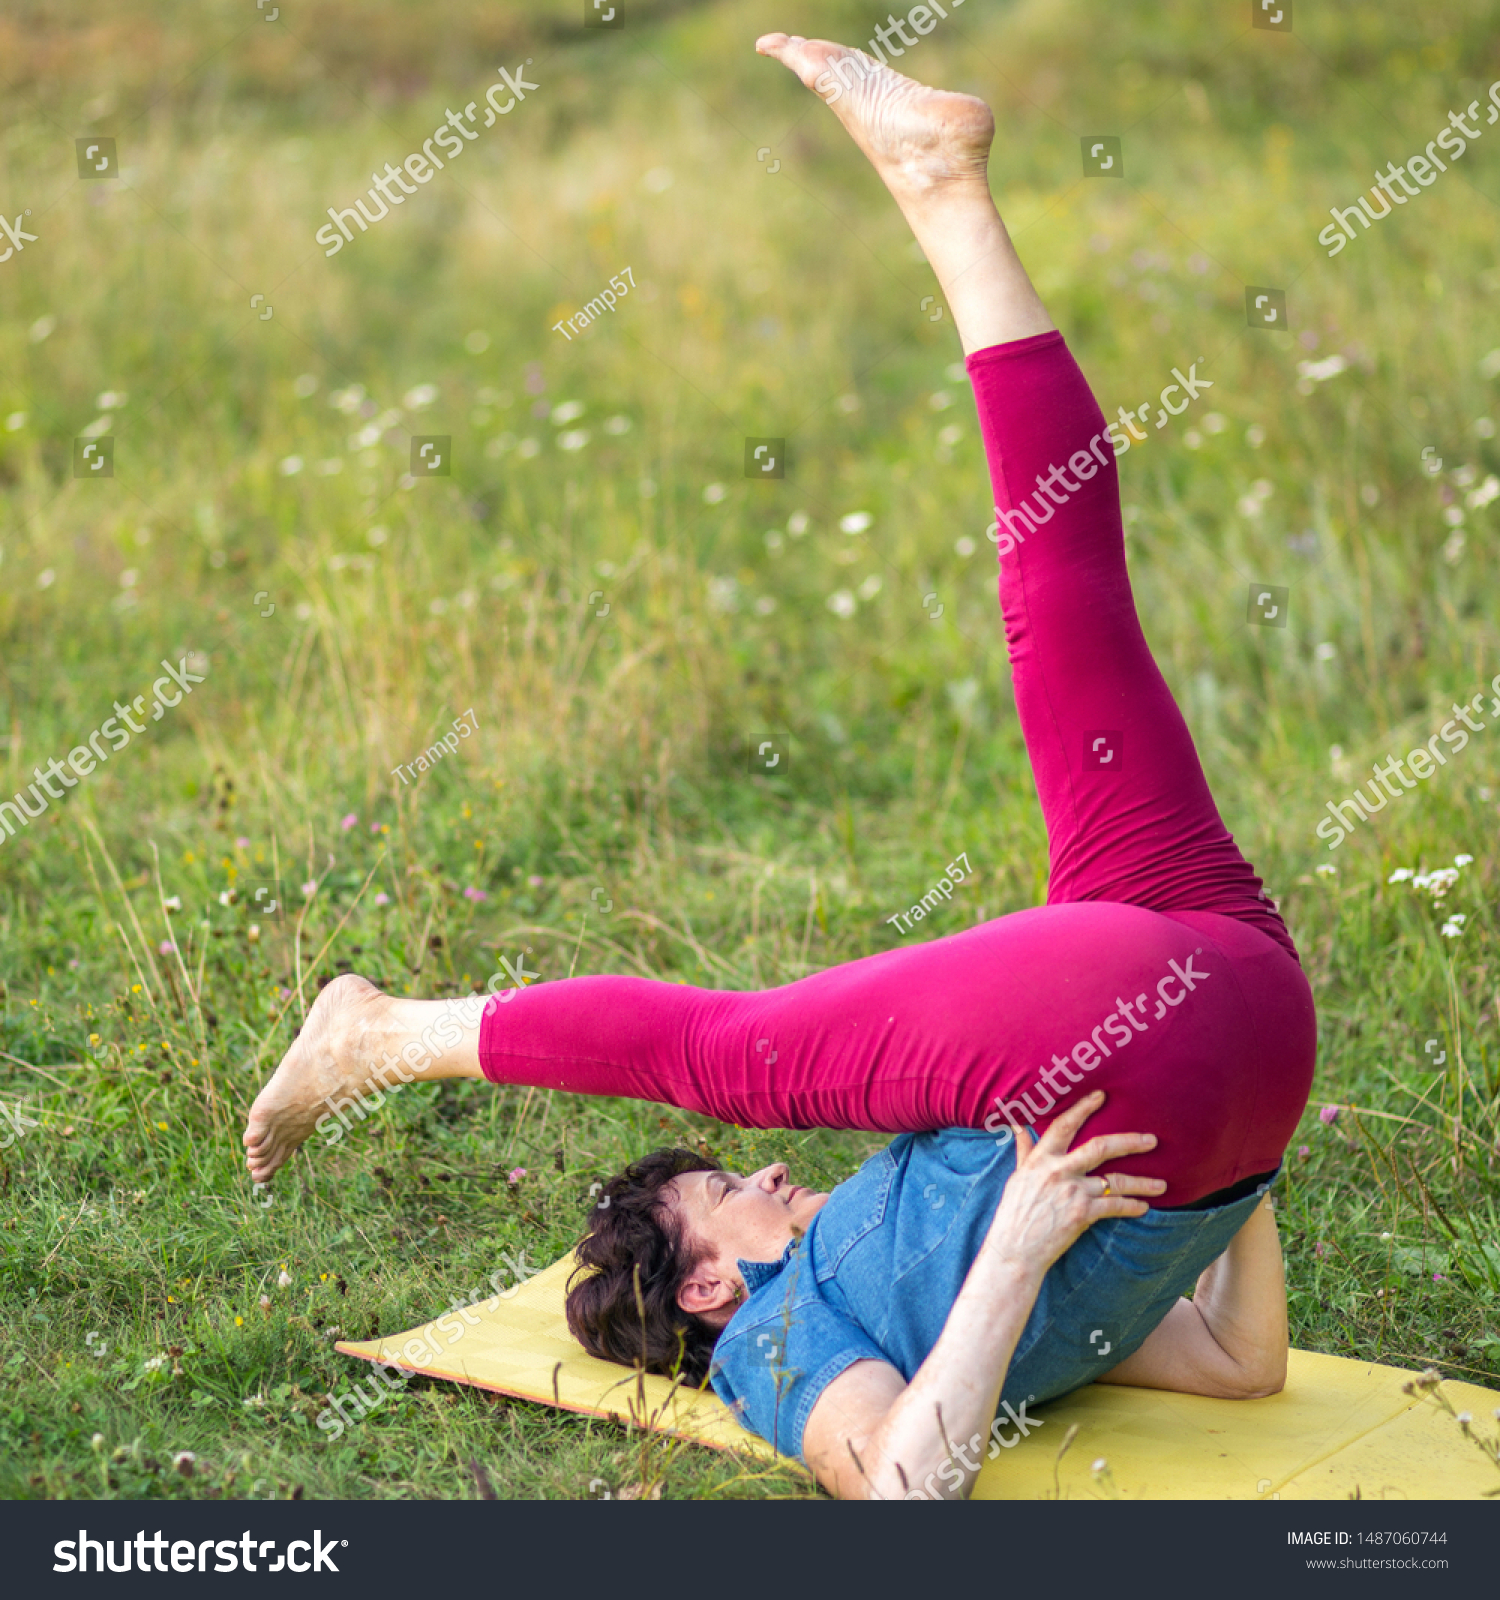 bj redden recommends older women doing yoga pic